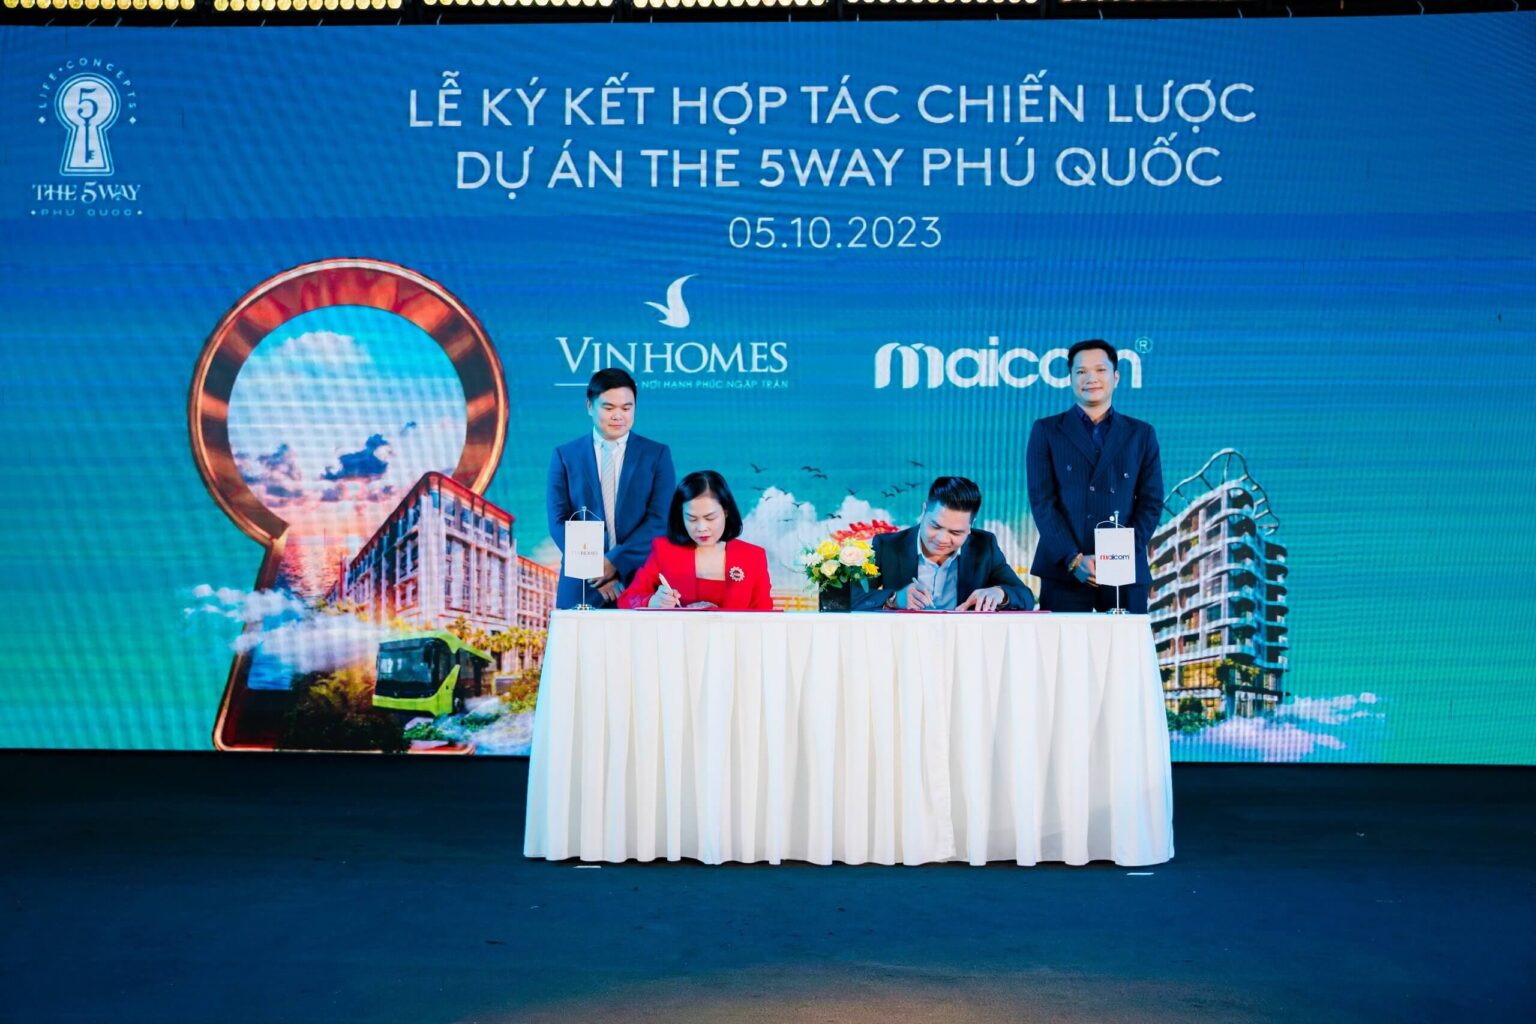 You are currently viewing Maicom ký kết hợp tác chiến lược dự án The 5Way Phú Quốc với Vinhomes